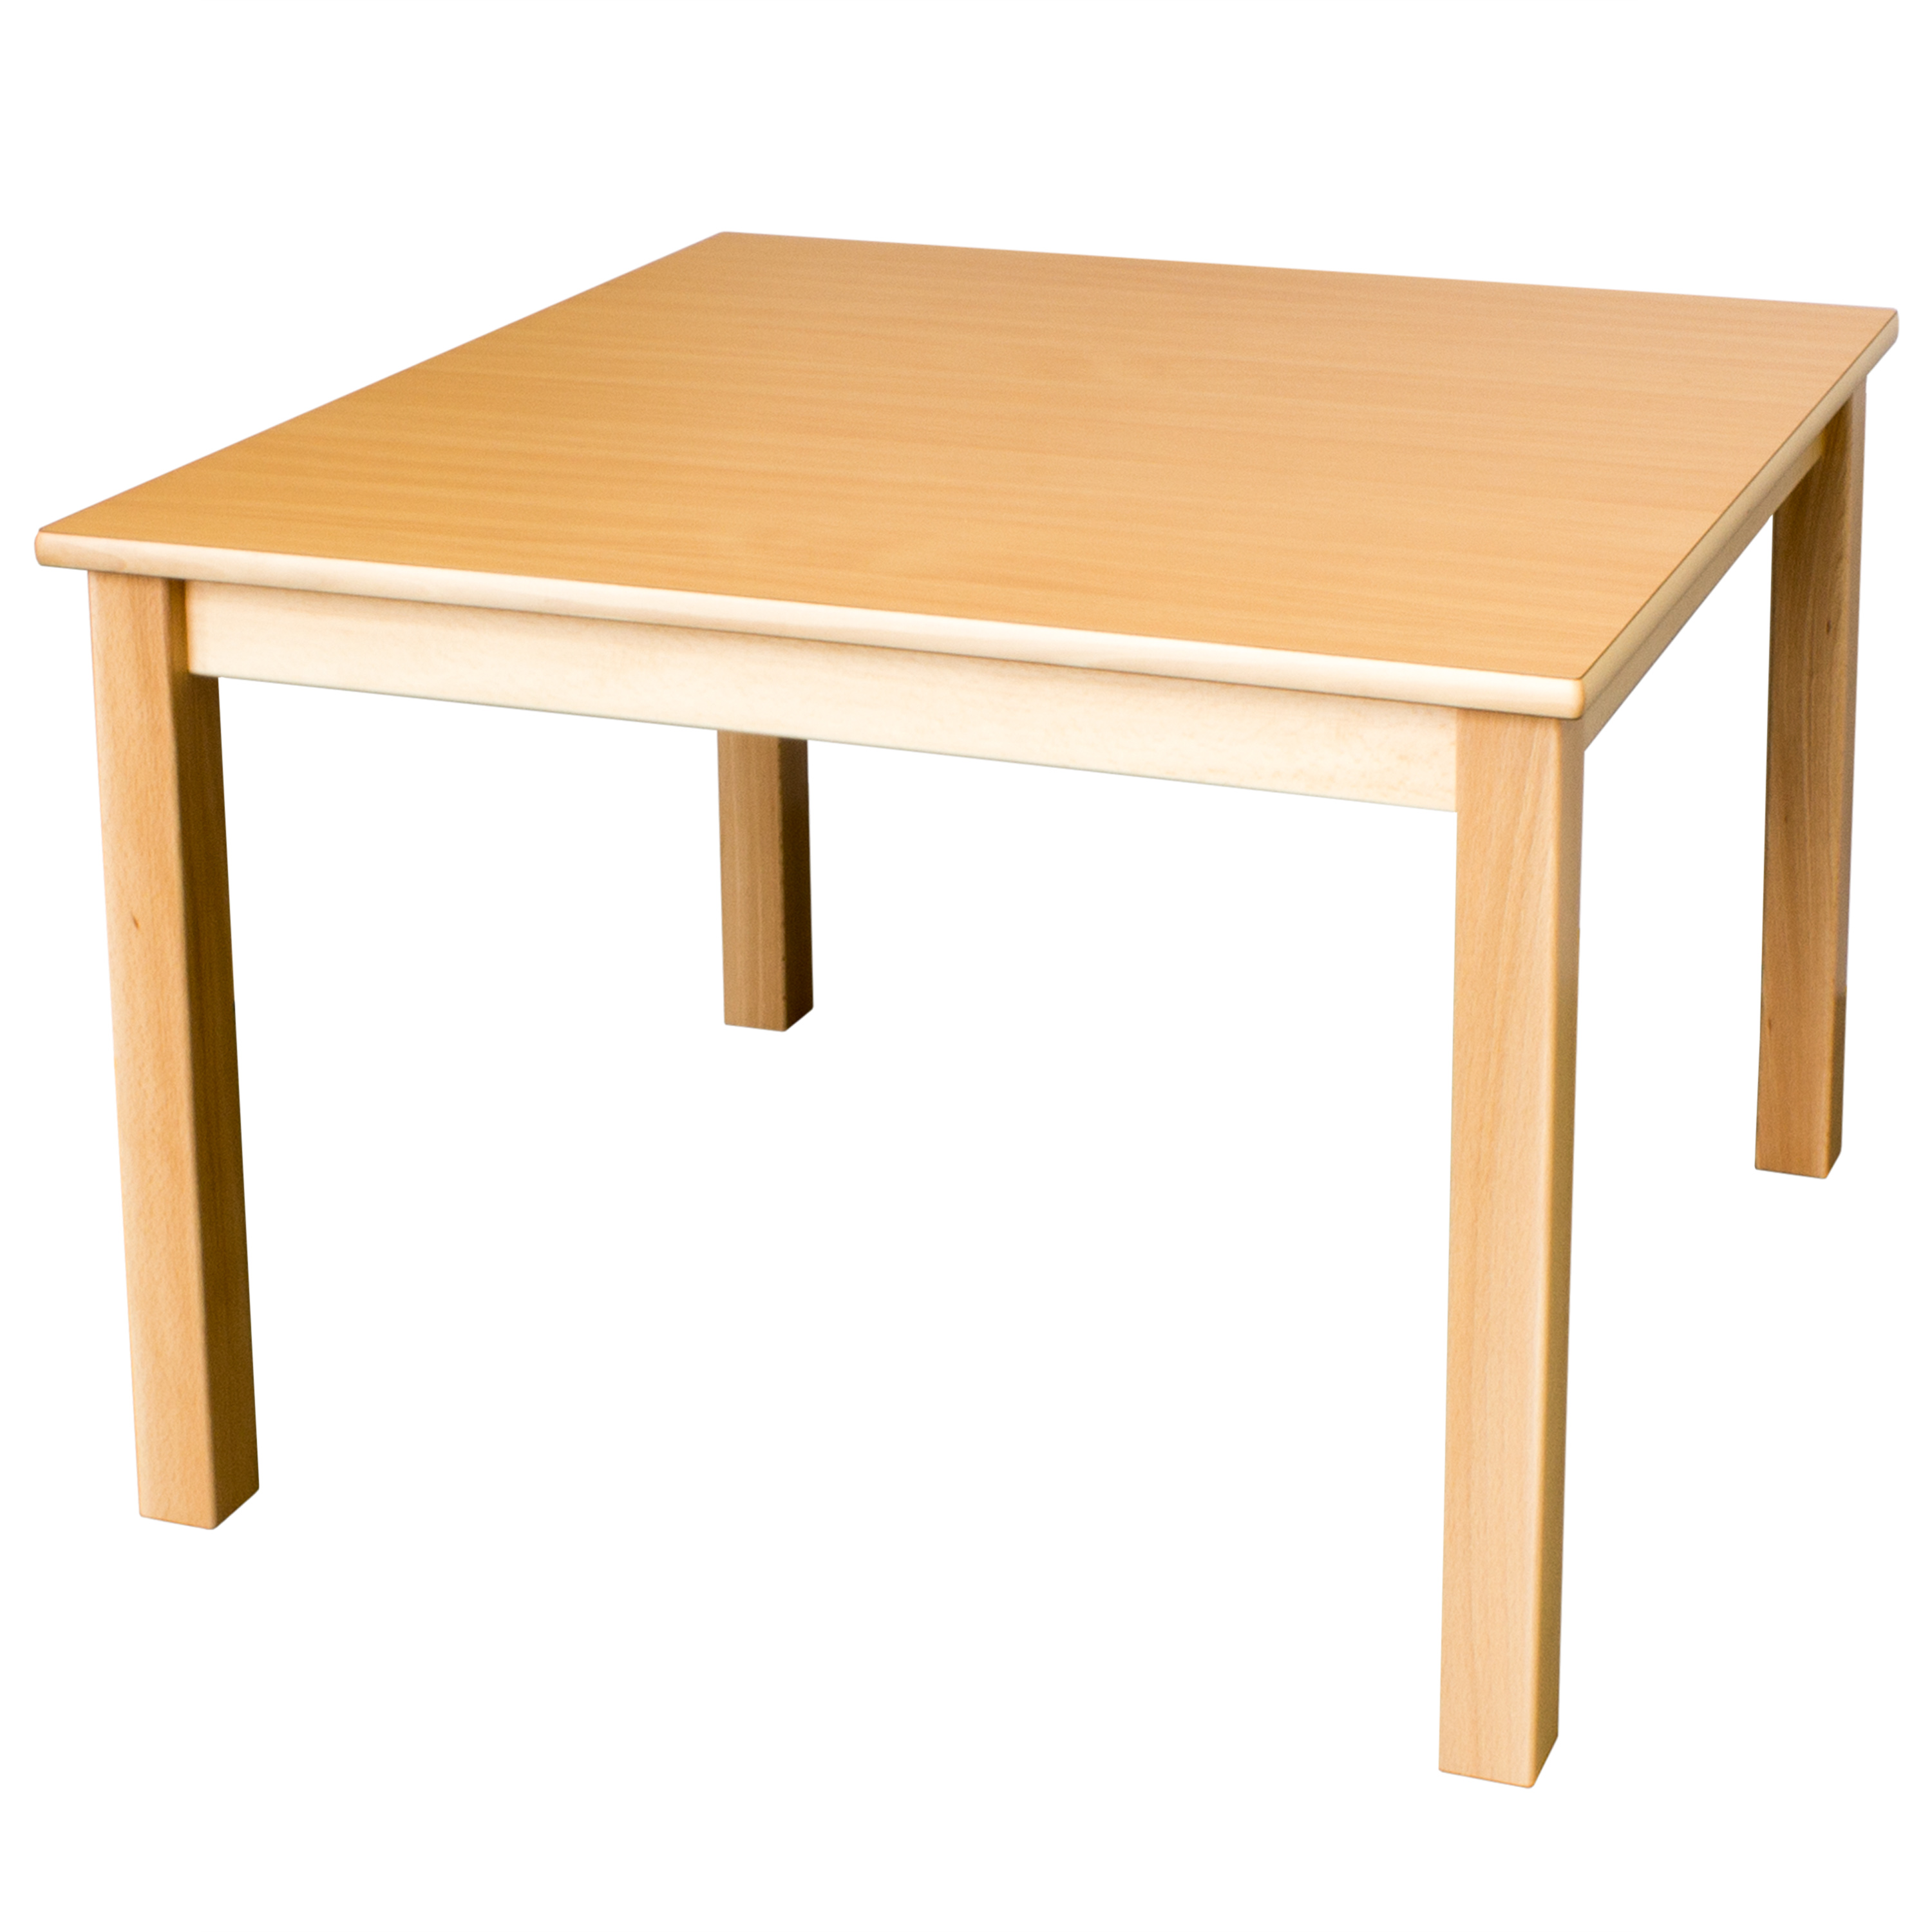 Quadrattisch in der Größe 60 x 60 cm, Tischhöhe 52 cm